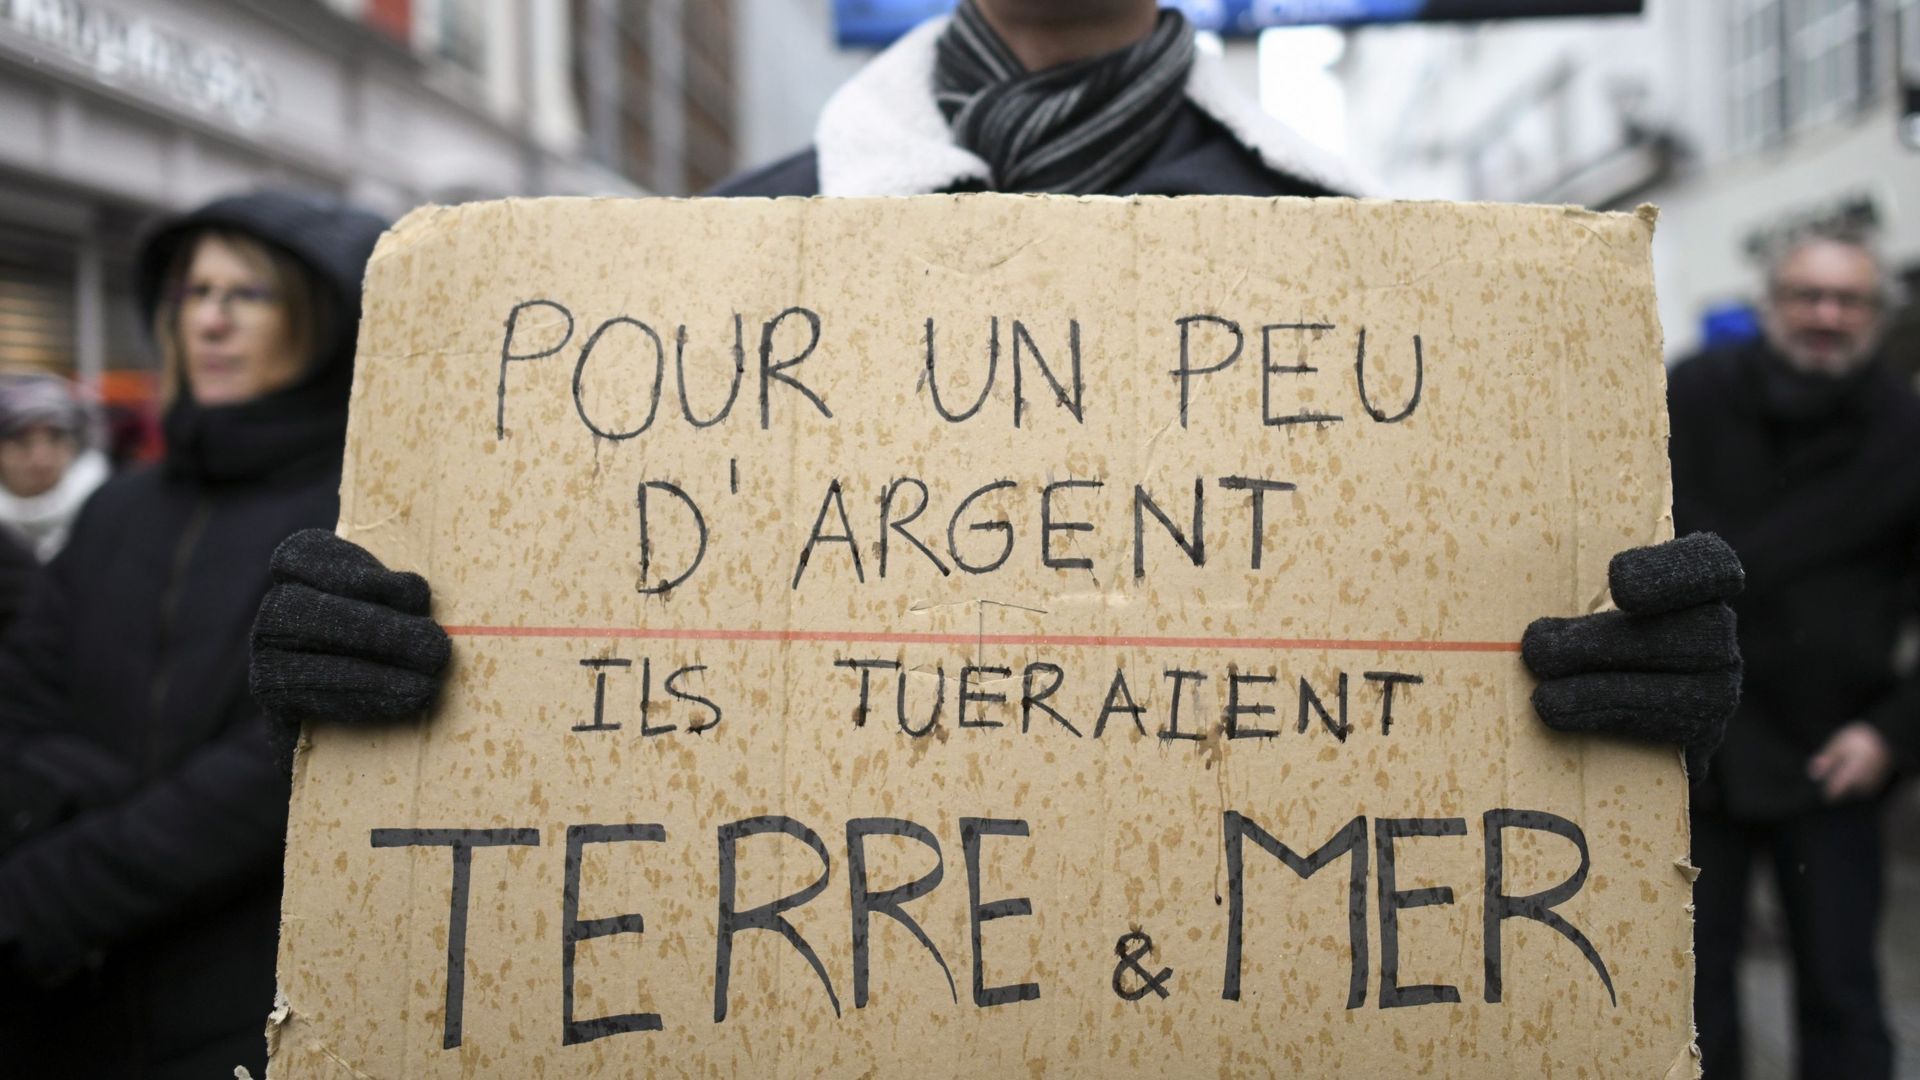 Un homme tien une pancarte où il est écrit "Pour un peu d'argent, ils tueraient terre et mer" lors d'une marche pour le climat en France.